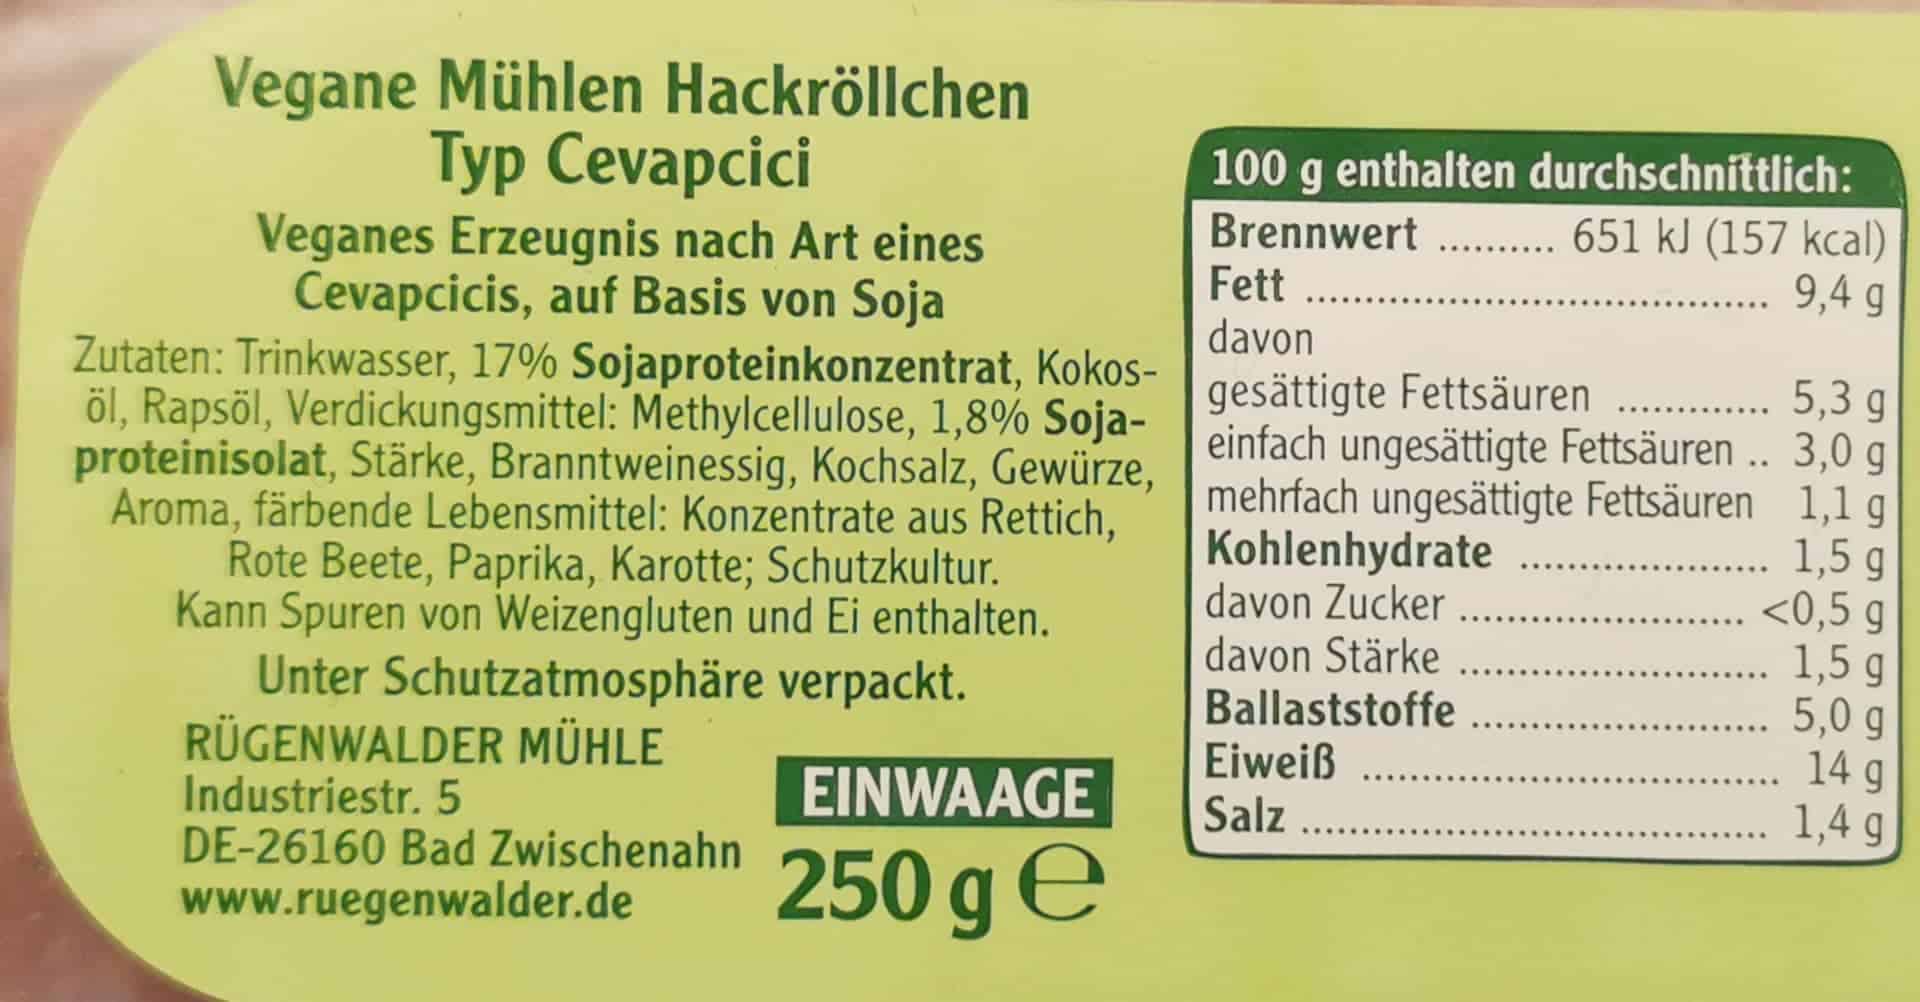 Rügenwalder Mühle: Vegane Mühlen Hackröllchen Cevapcici Inhaltsstoffe und Nährwerte